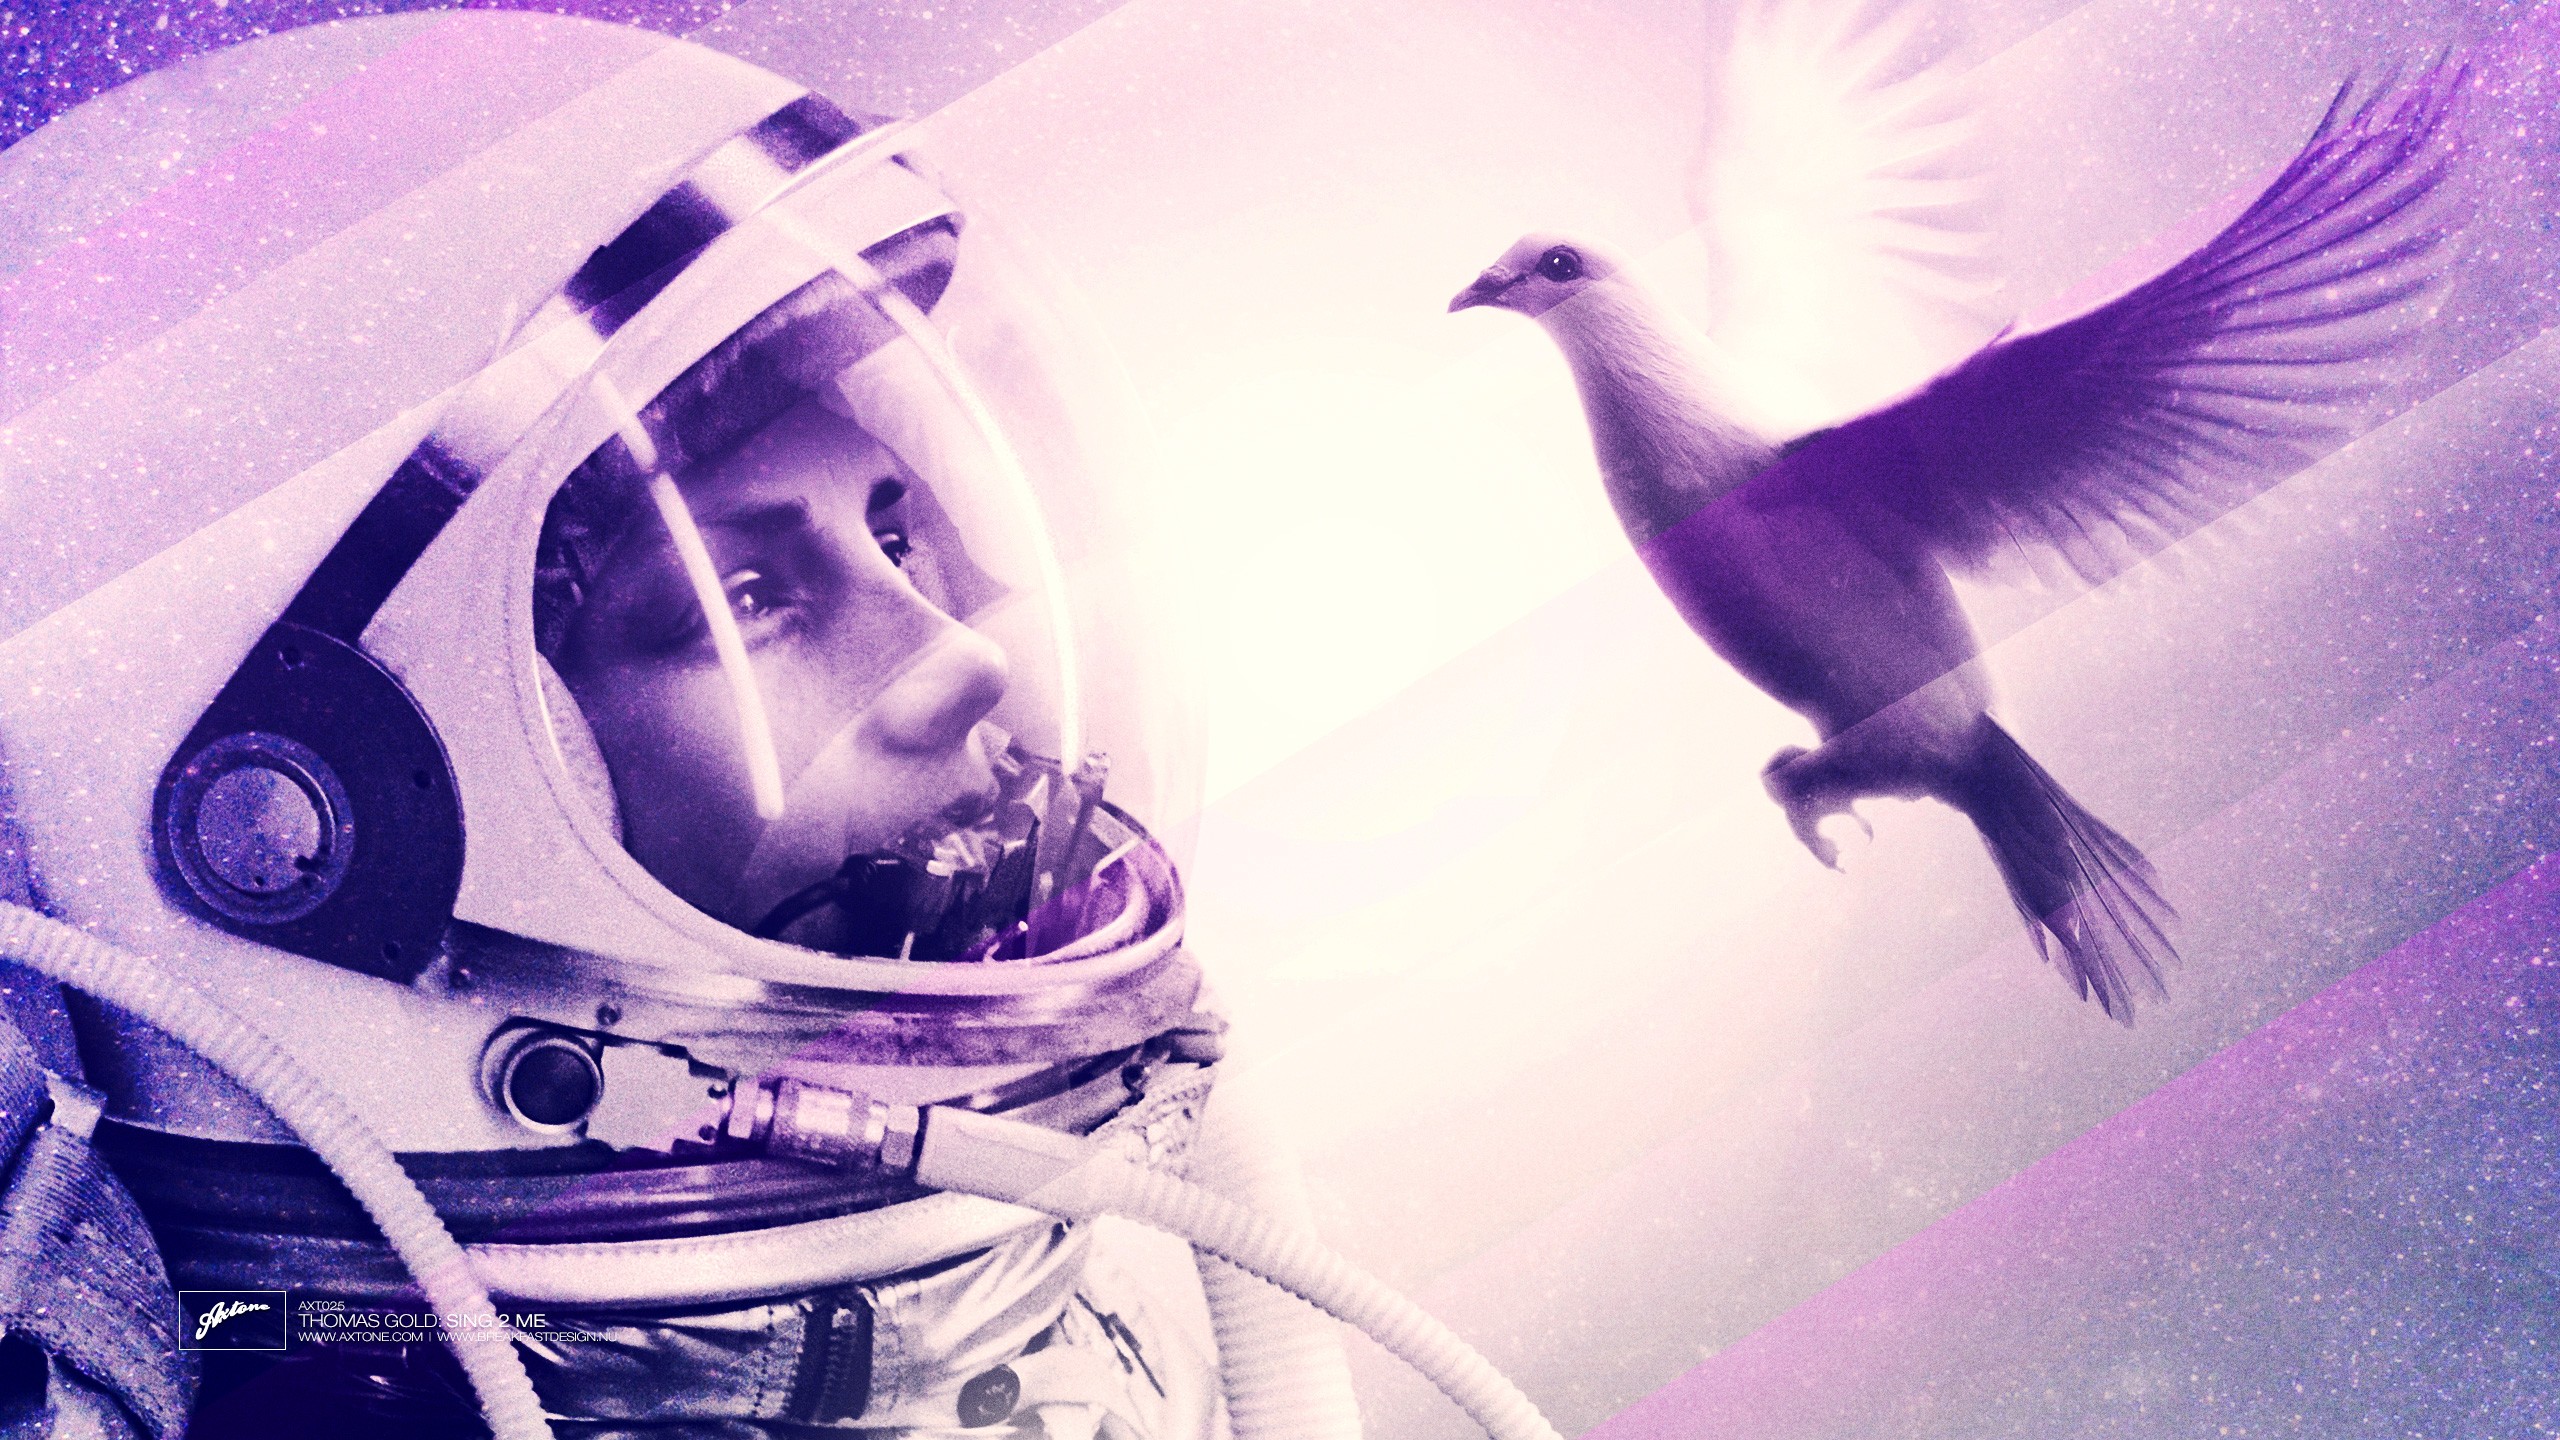 General 2560x1440 Axwell Eternal Sunshine of the Spotless Mind lights birds women animals digital art astronaut